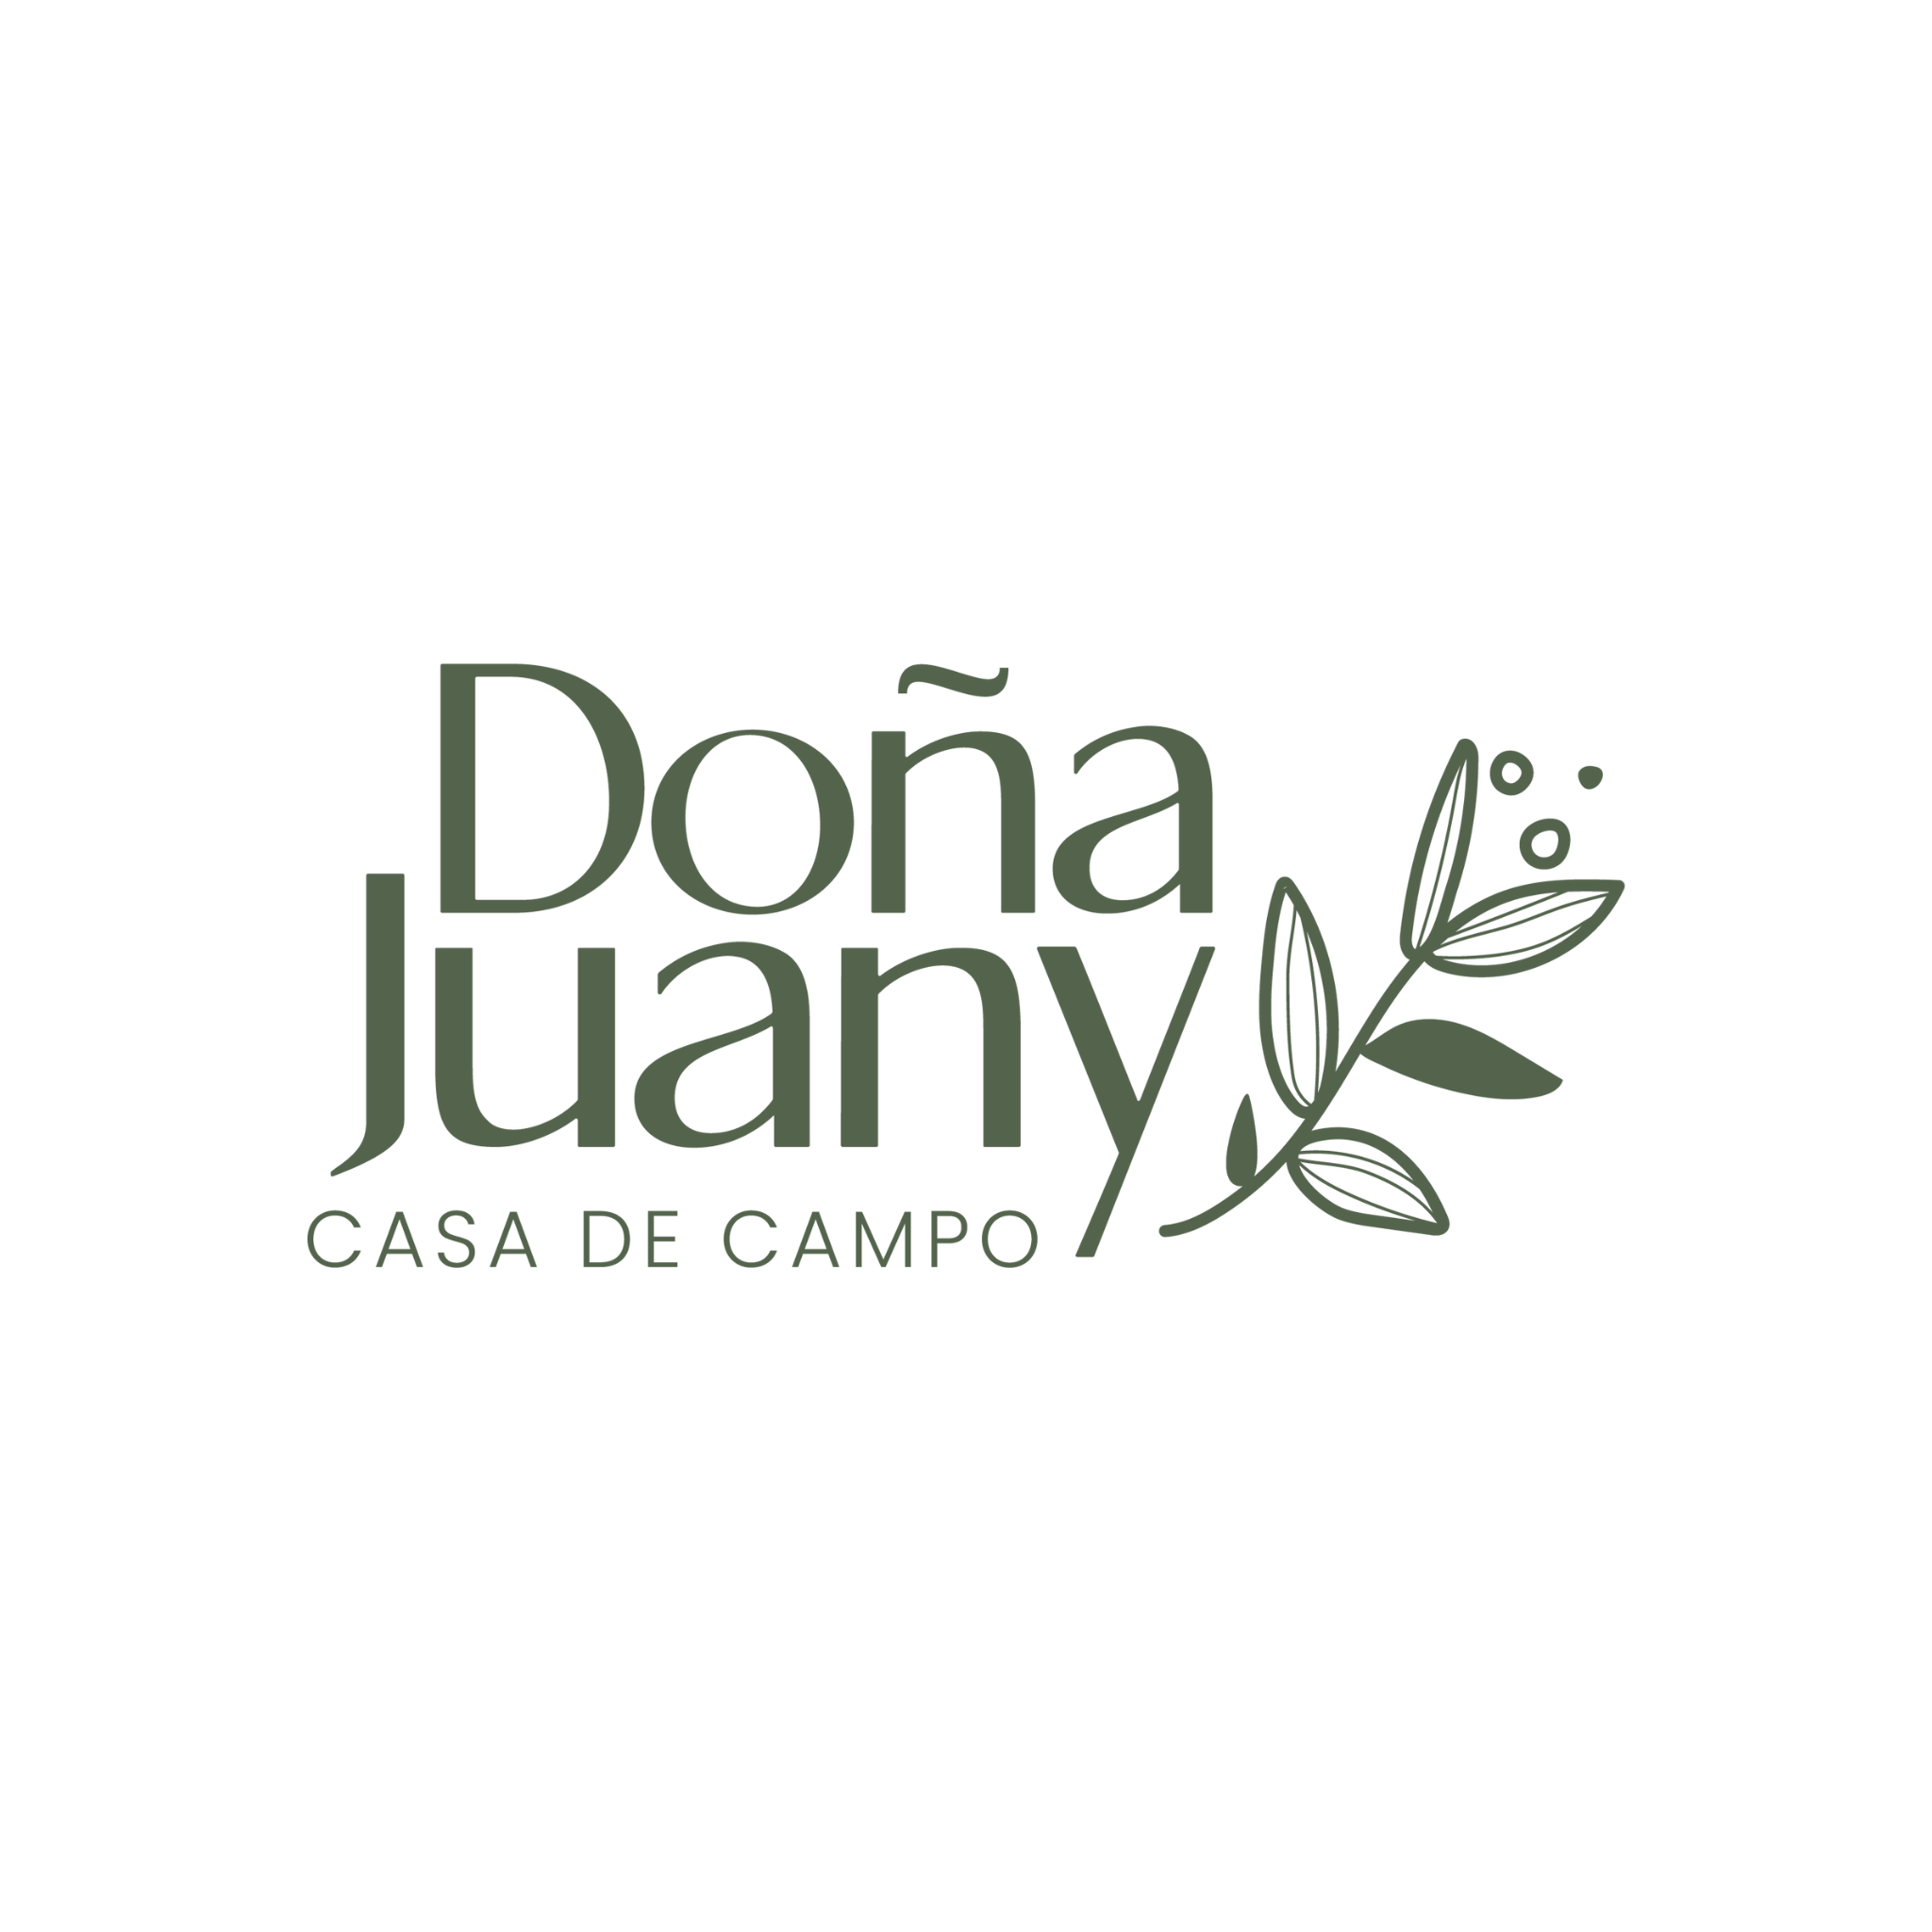 Doña juany